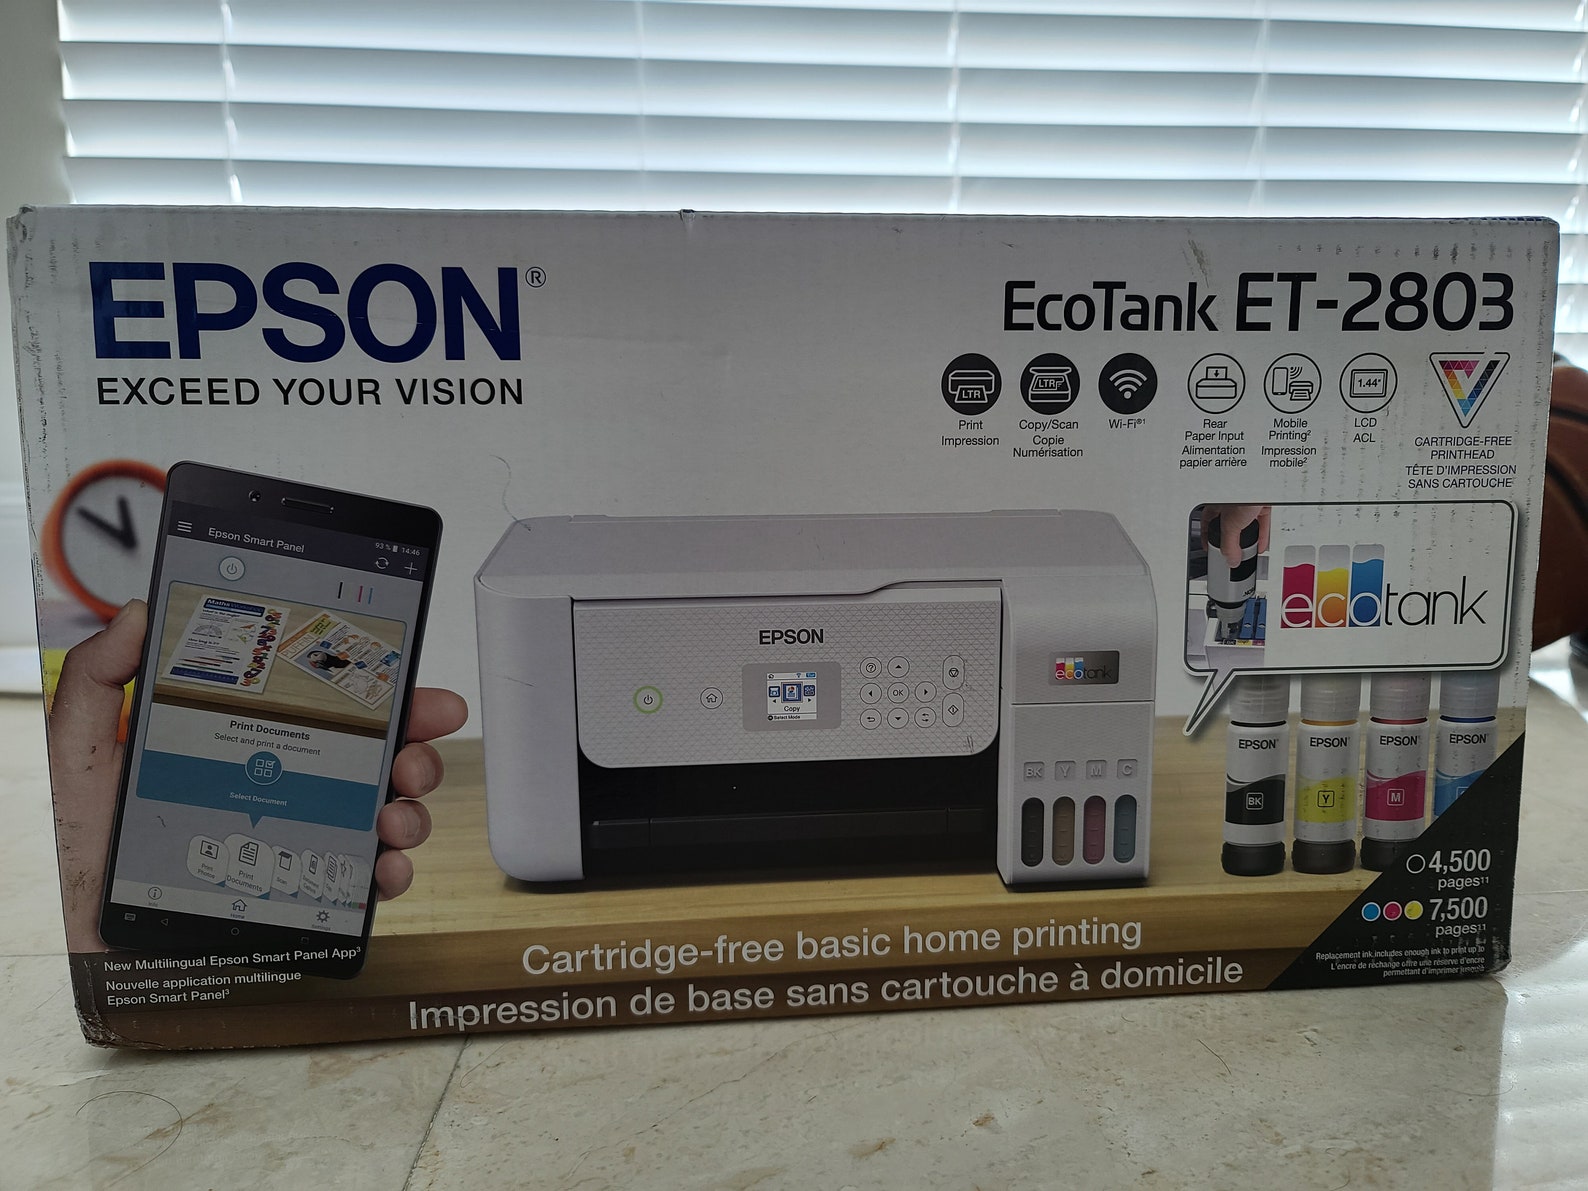 Brand New Epson ET-2803 Printer Scanner Copier and - Etsy UK